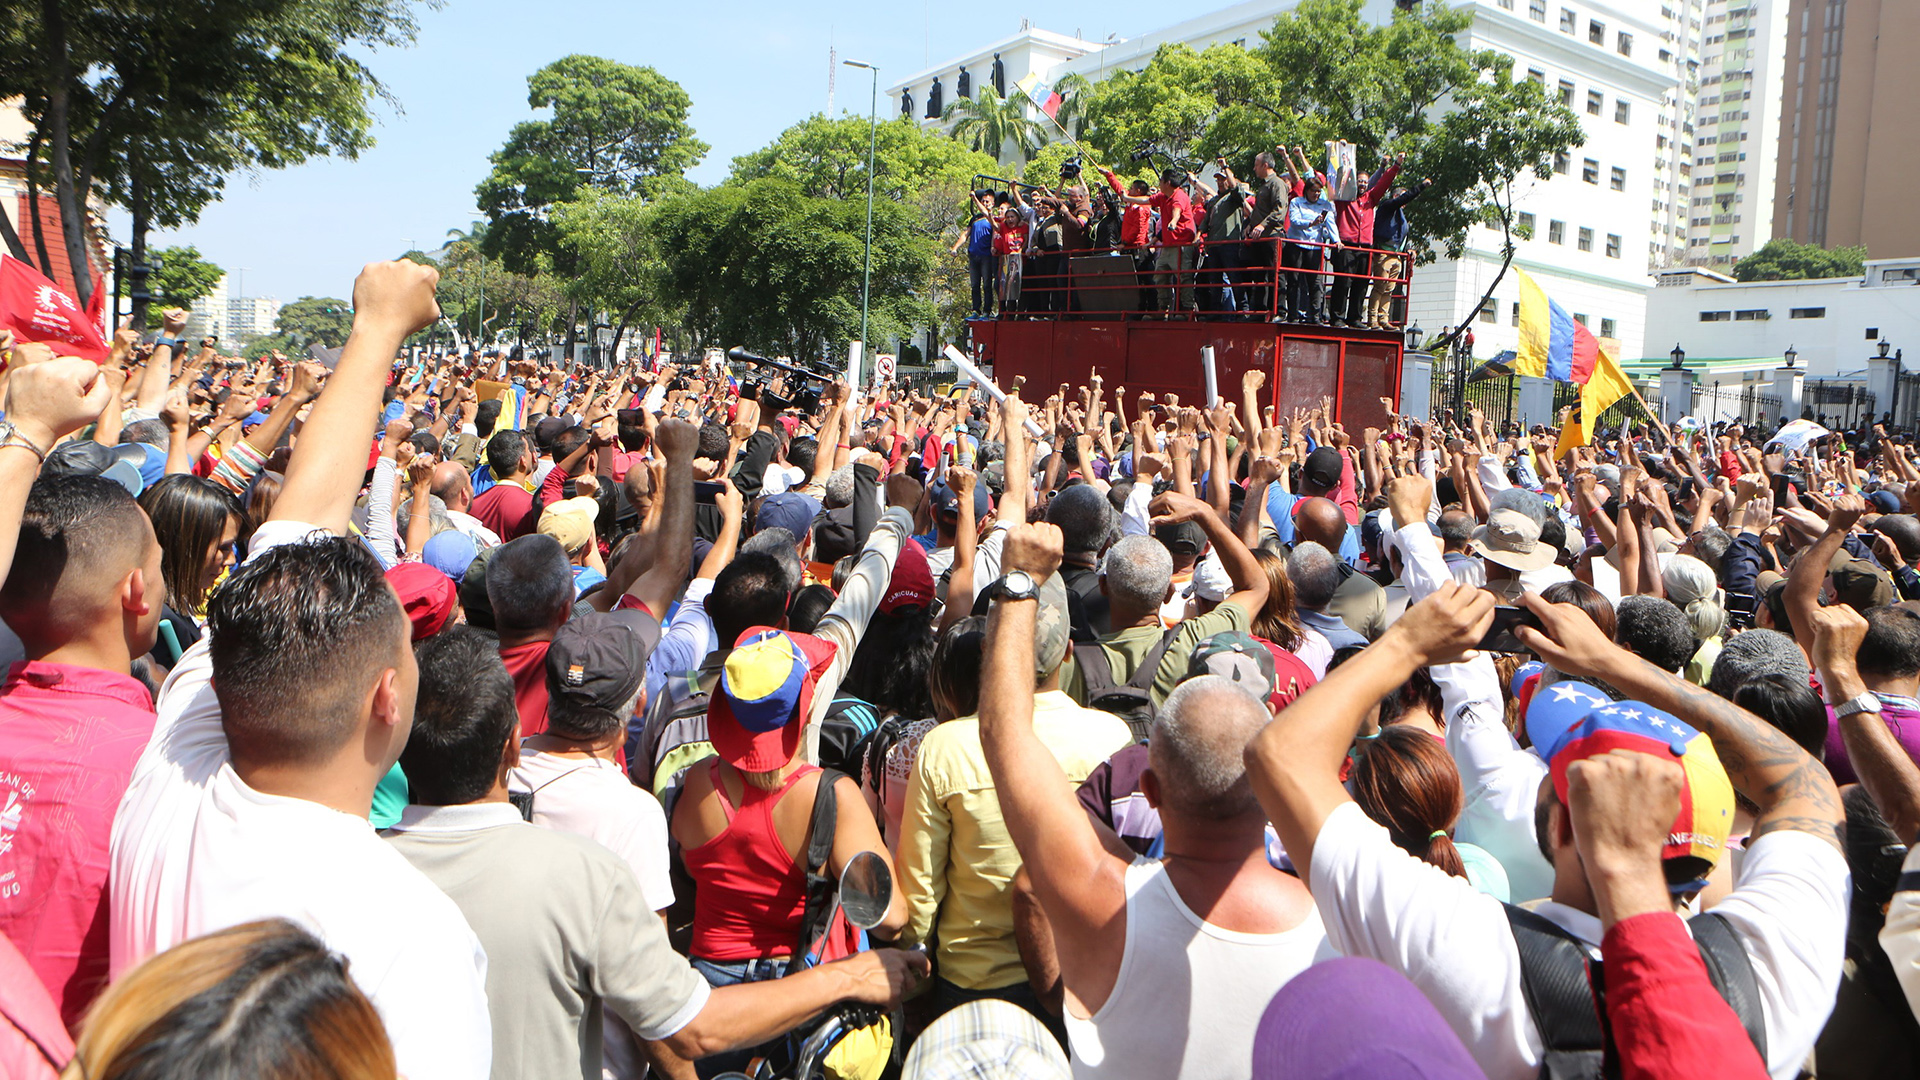 Anhänger von Präsident Maduro protestieren gegen den selbst ernannten Übergangspräsidenten Guaidó.  | Mirfaflores Press HANDOUT/EPA-EF